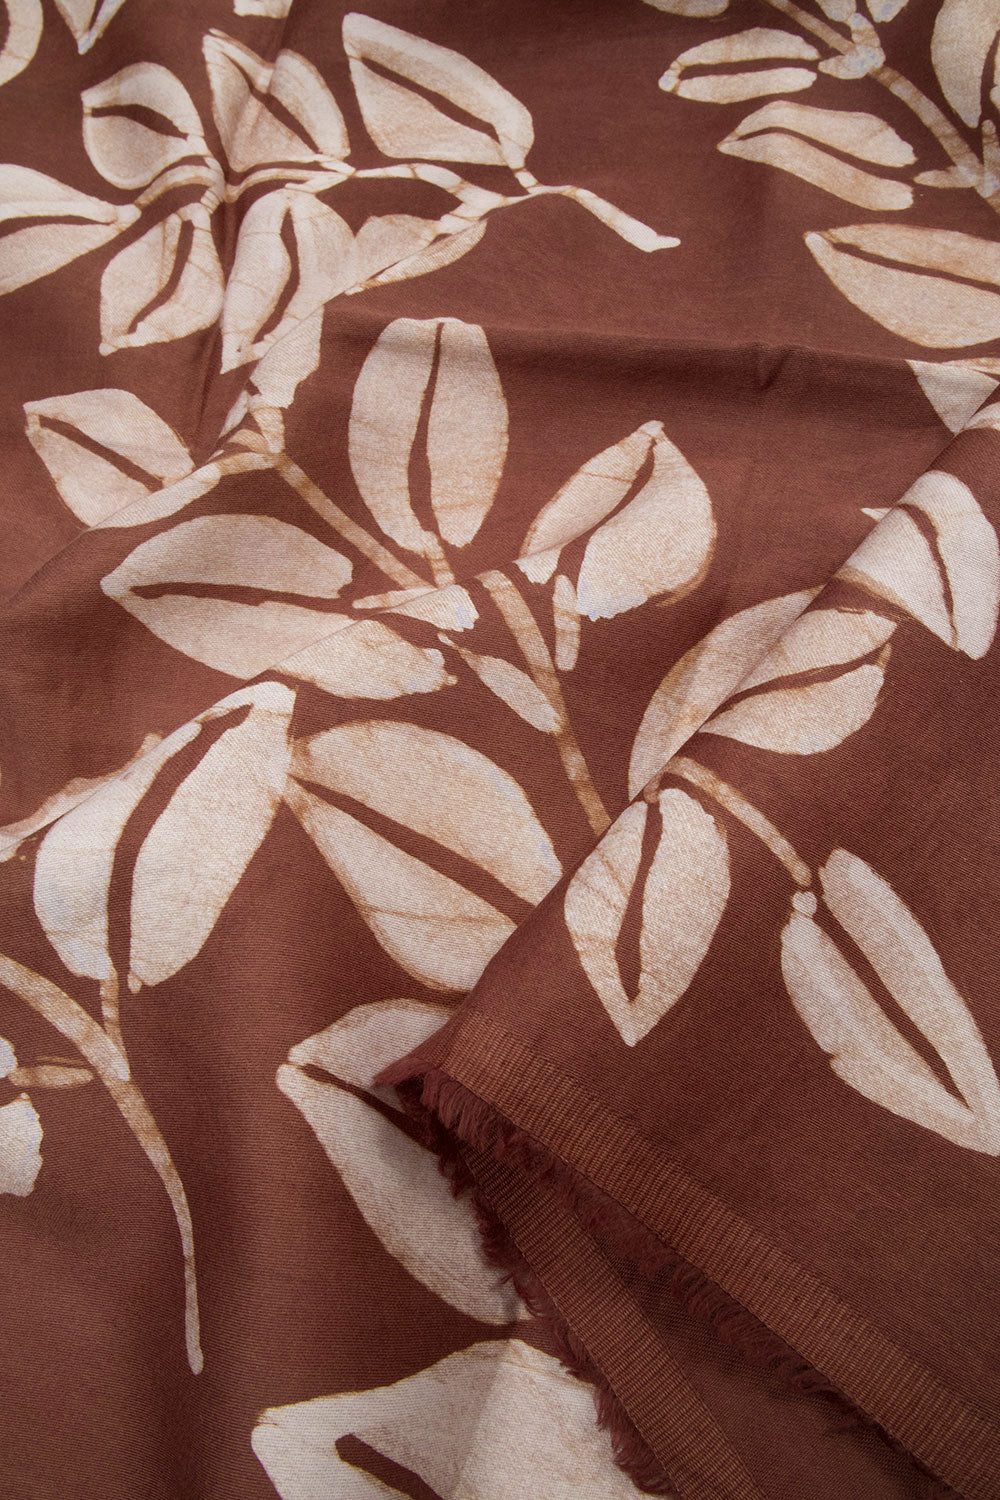 Brown Batik Printed Cotton Blouse Material 10063003